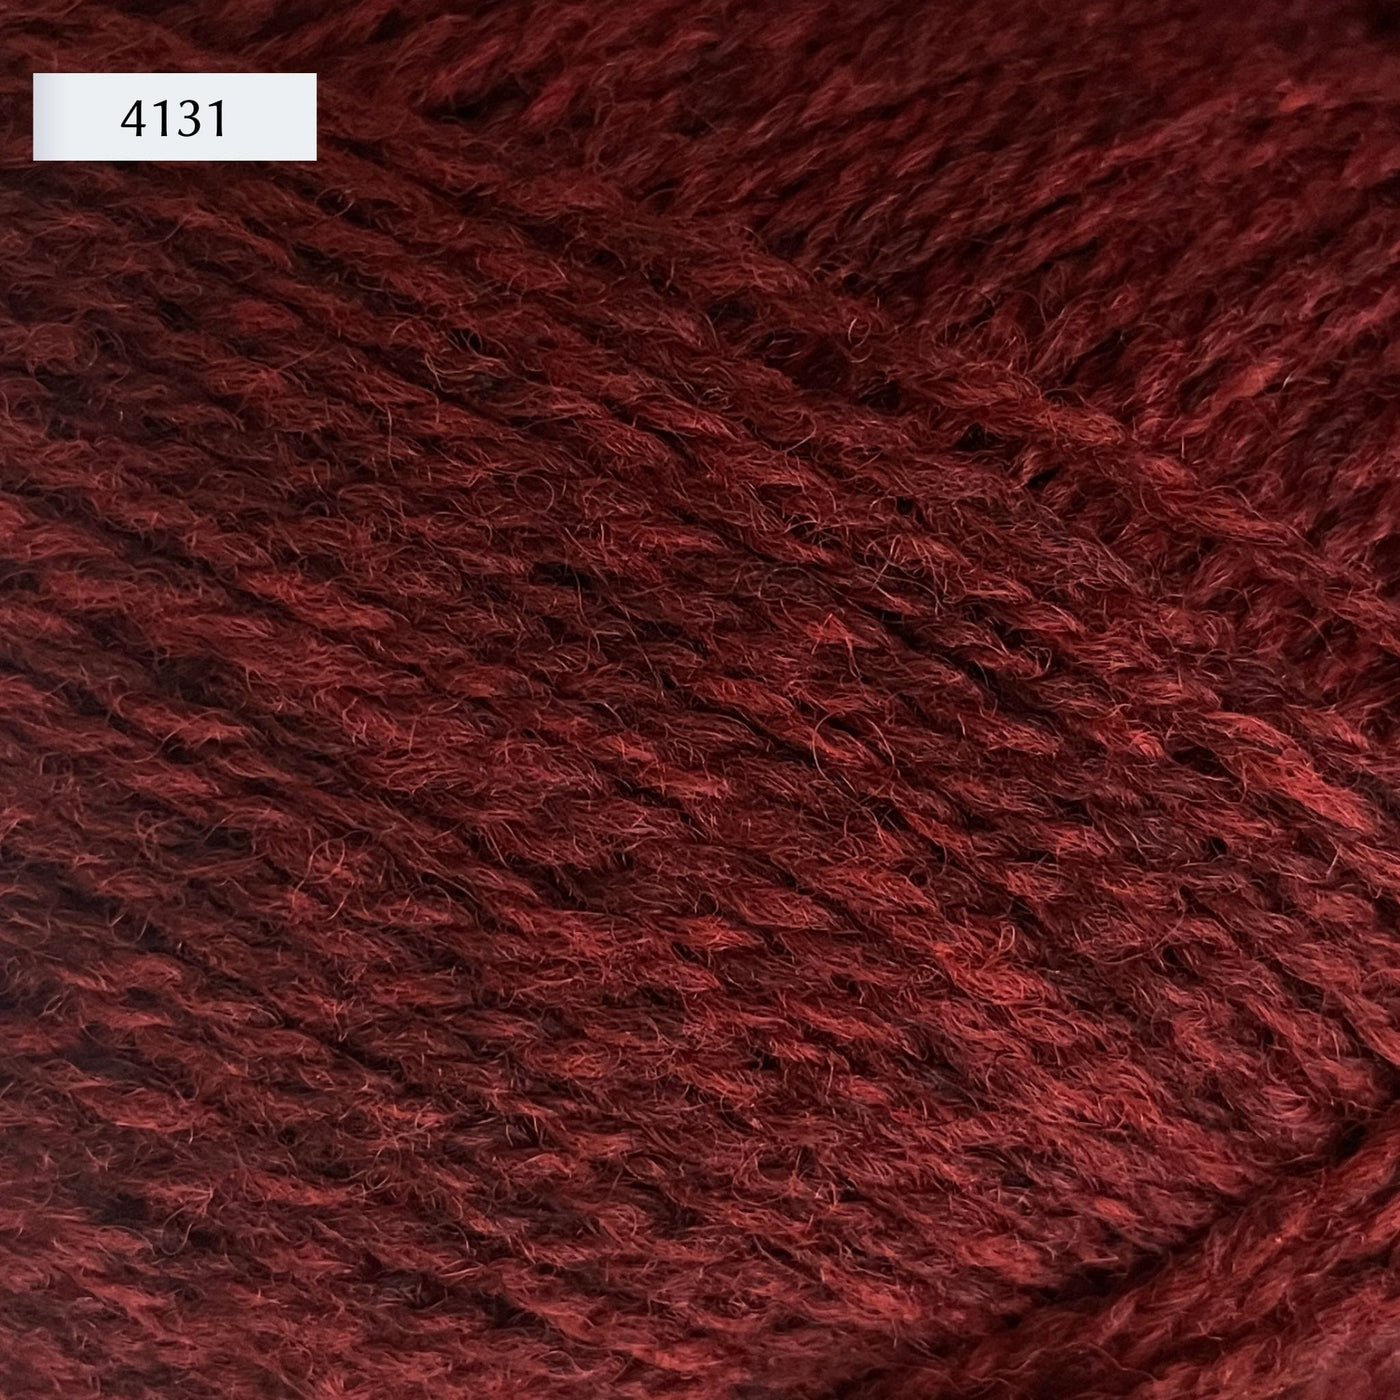 Rauma Finullgarn, a fingering/sport weight yarn, in color 4131, a heathered warm burgundy